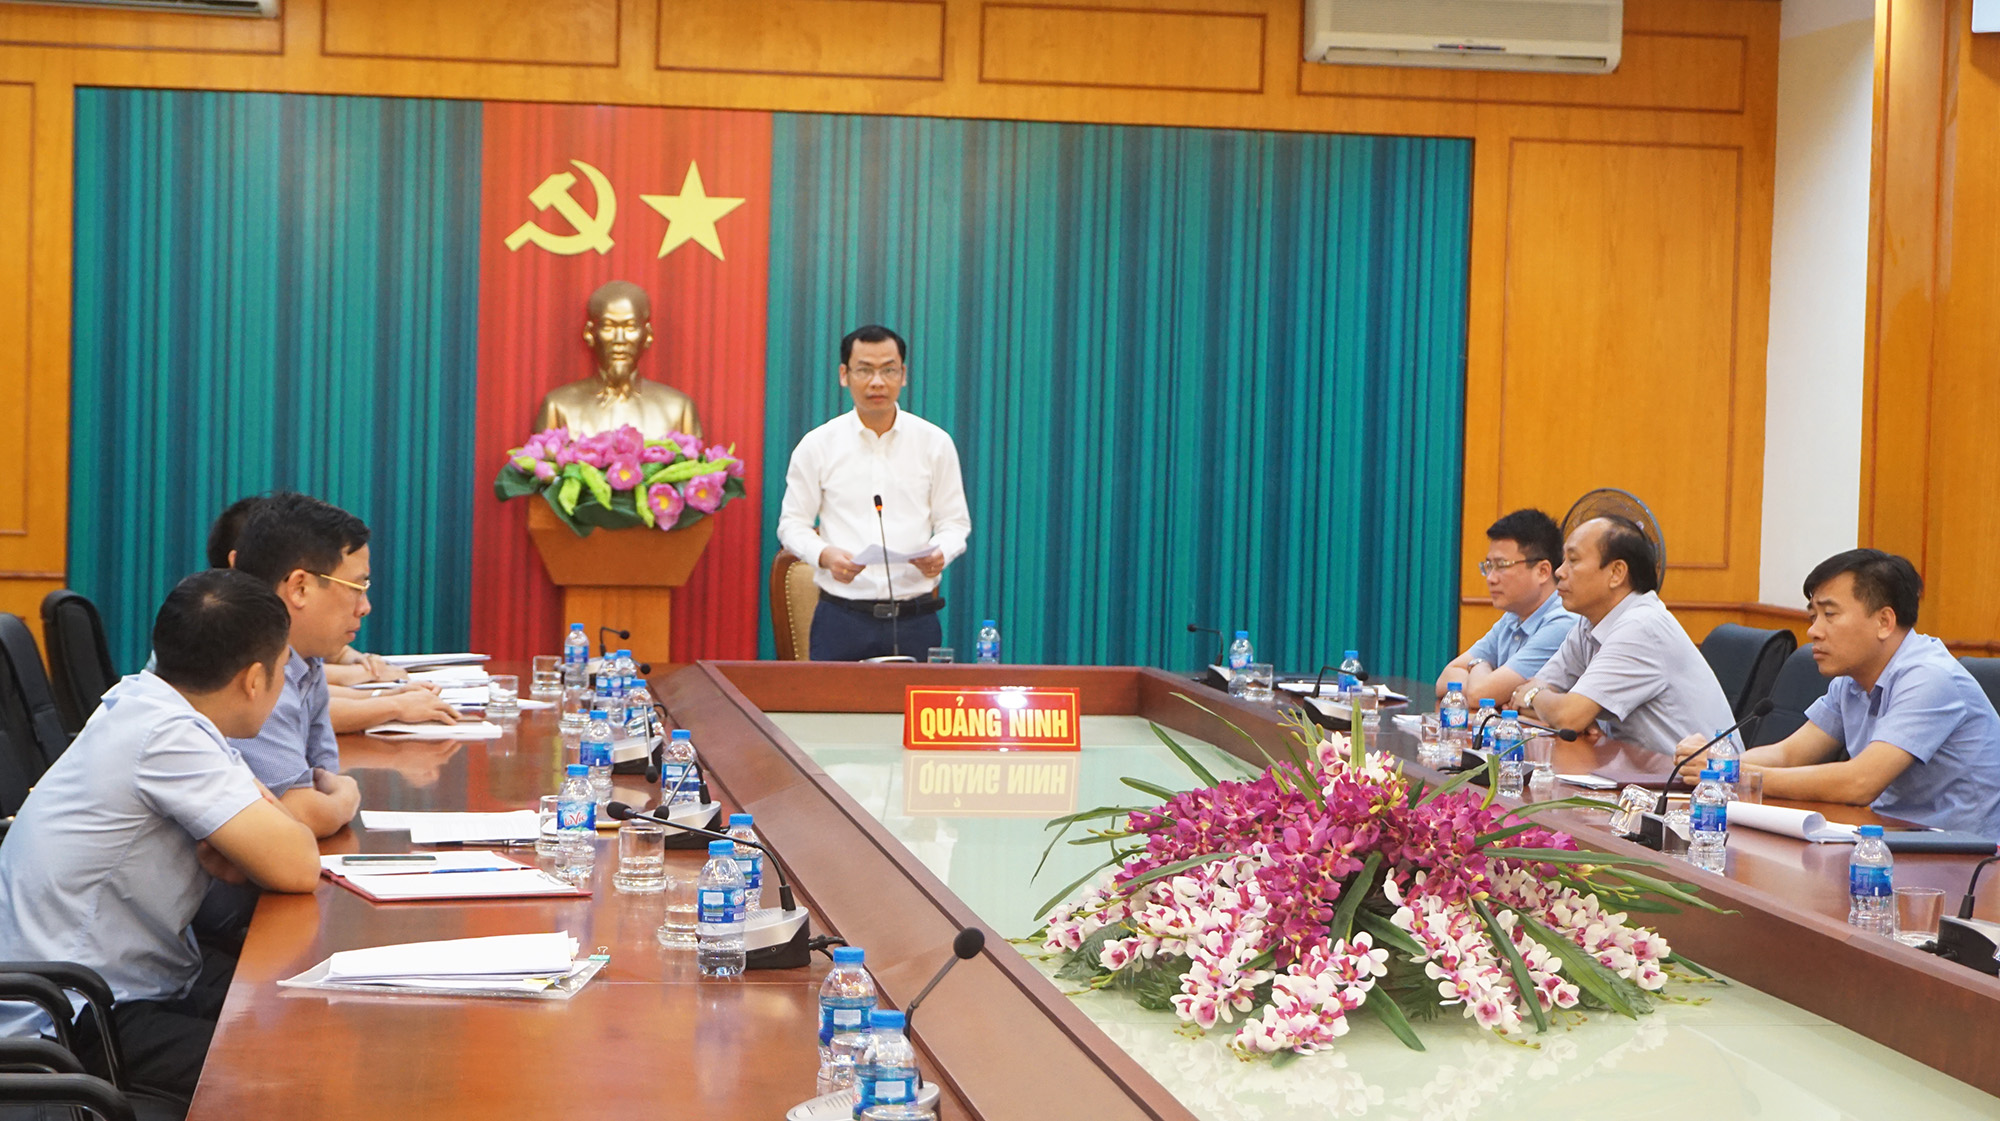 Đại diện Sở Kế hoạch và Đầu tư tỉnh Quảng Ninh phát biểu báo cáo, kiến nghị giải pháp tại Hội nghị.